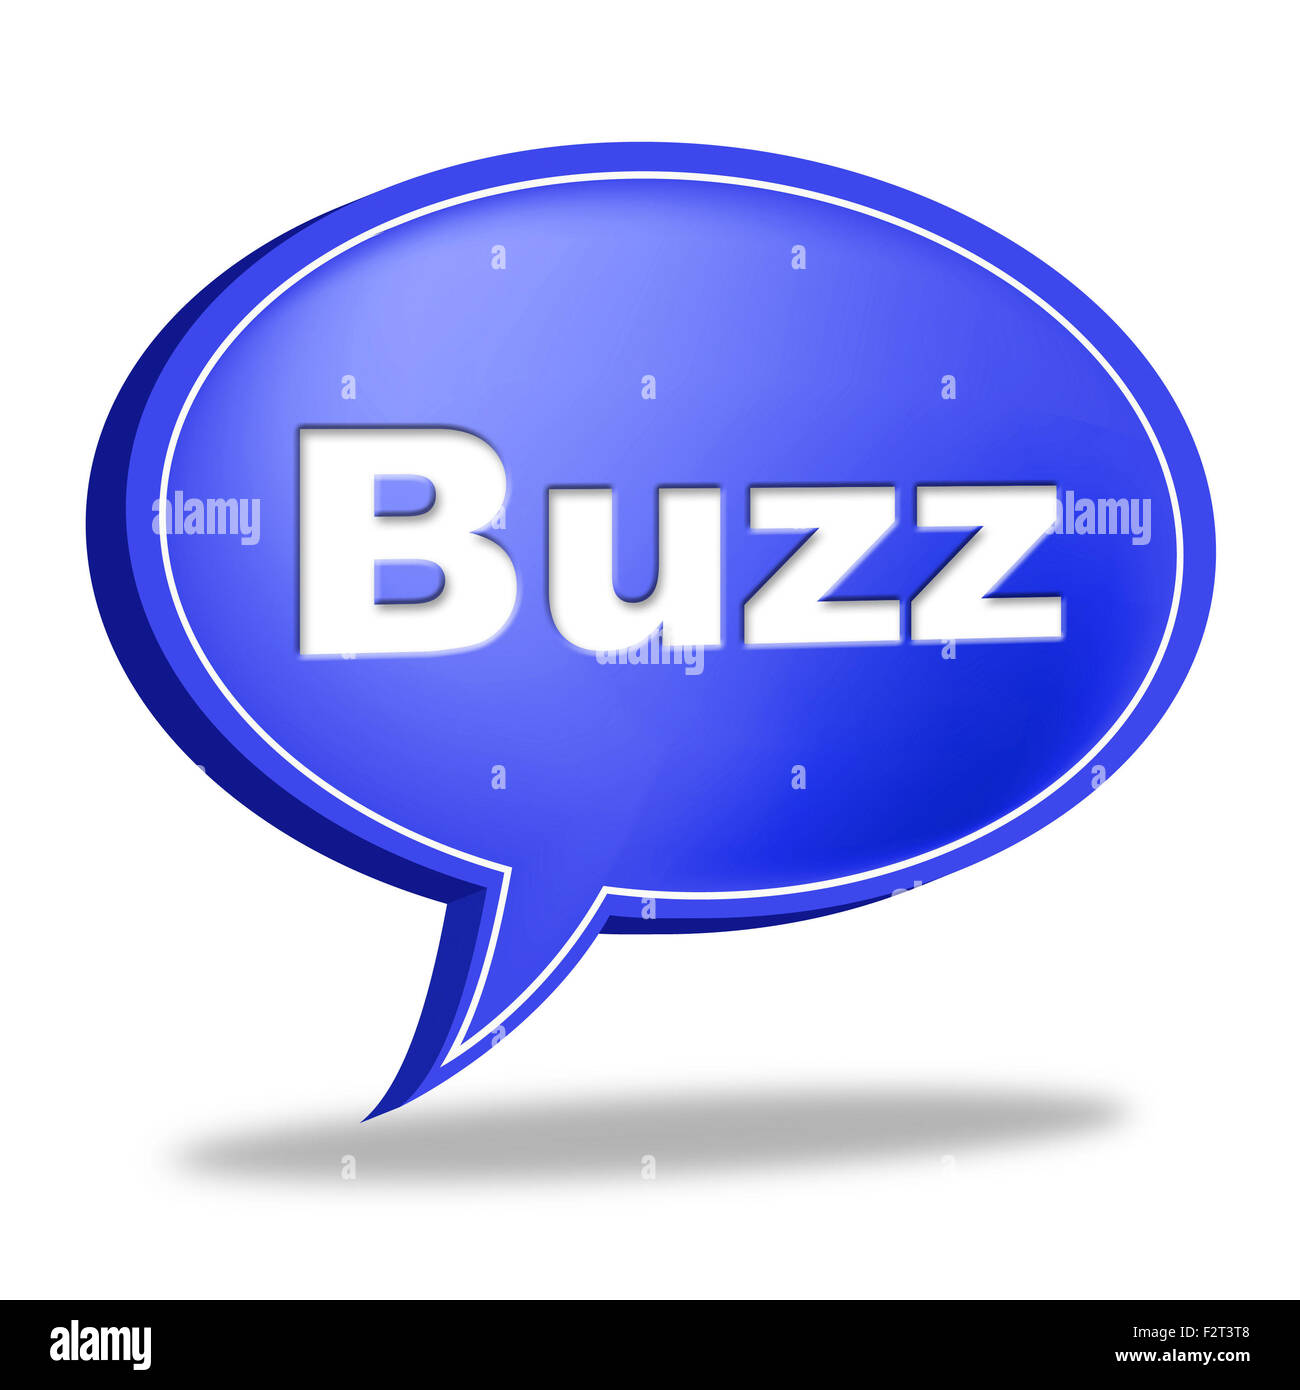 Buzz inscriptionhandwritten text in speech bubble Vector Image